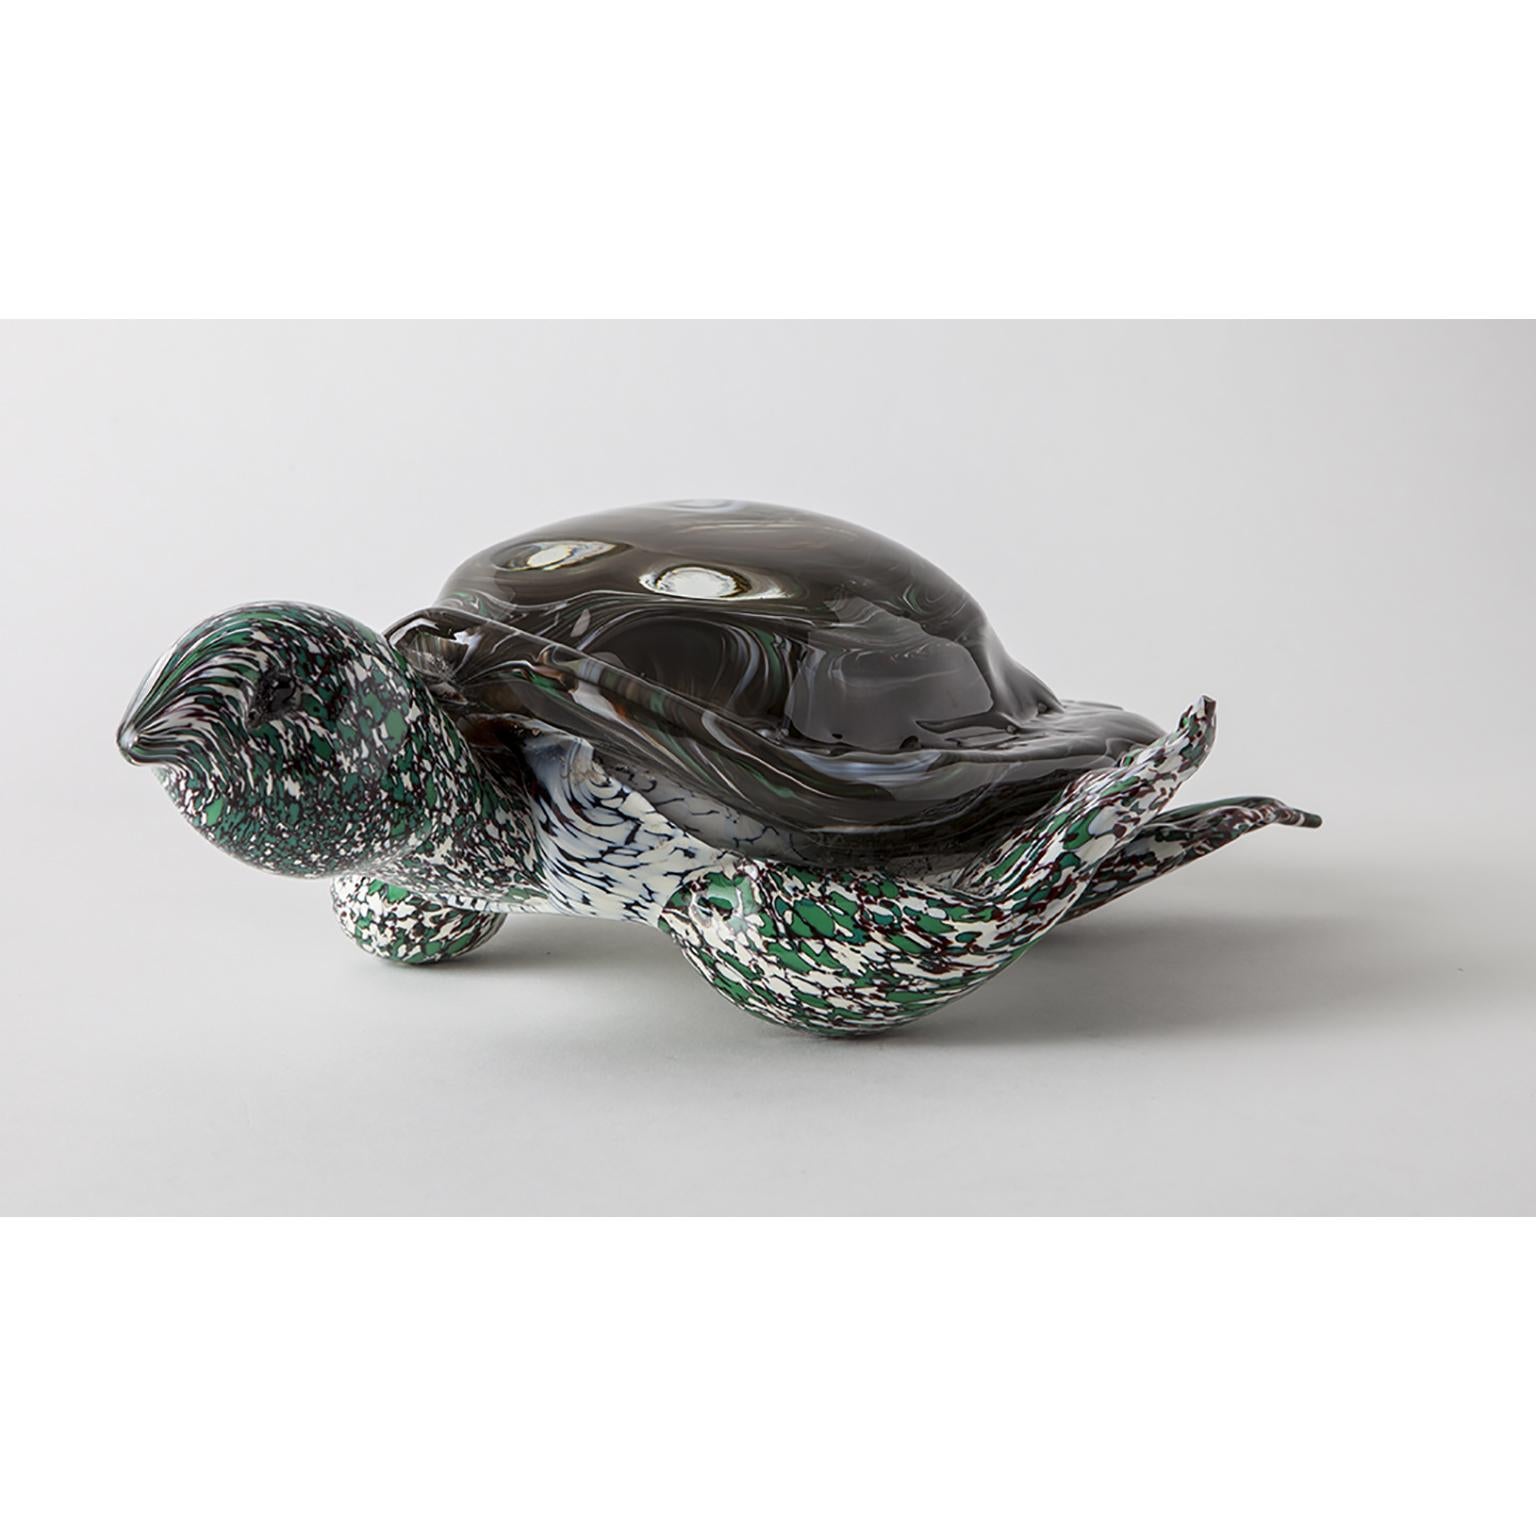 Tauchen Sie ein in die Schönheit unserer modernen, künstlerischen Wasserschildkröten-Skulptur, die in präziser Handarbeit aus echtem Murano-Glas hergestellt wird. Jedes exquisite Detail wird von erfahrenen Kunsthandwerkern sorgfältig gefertigt, um